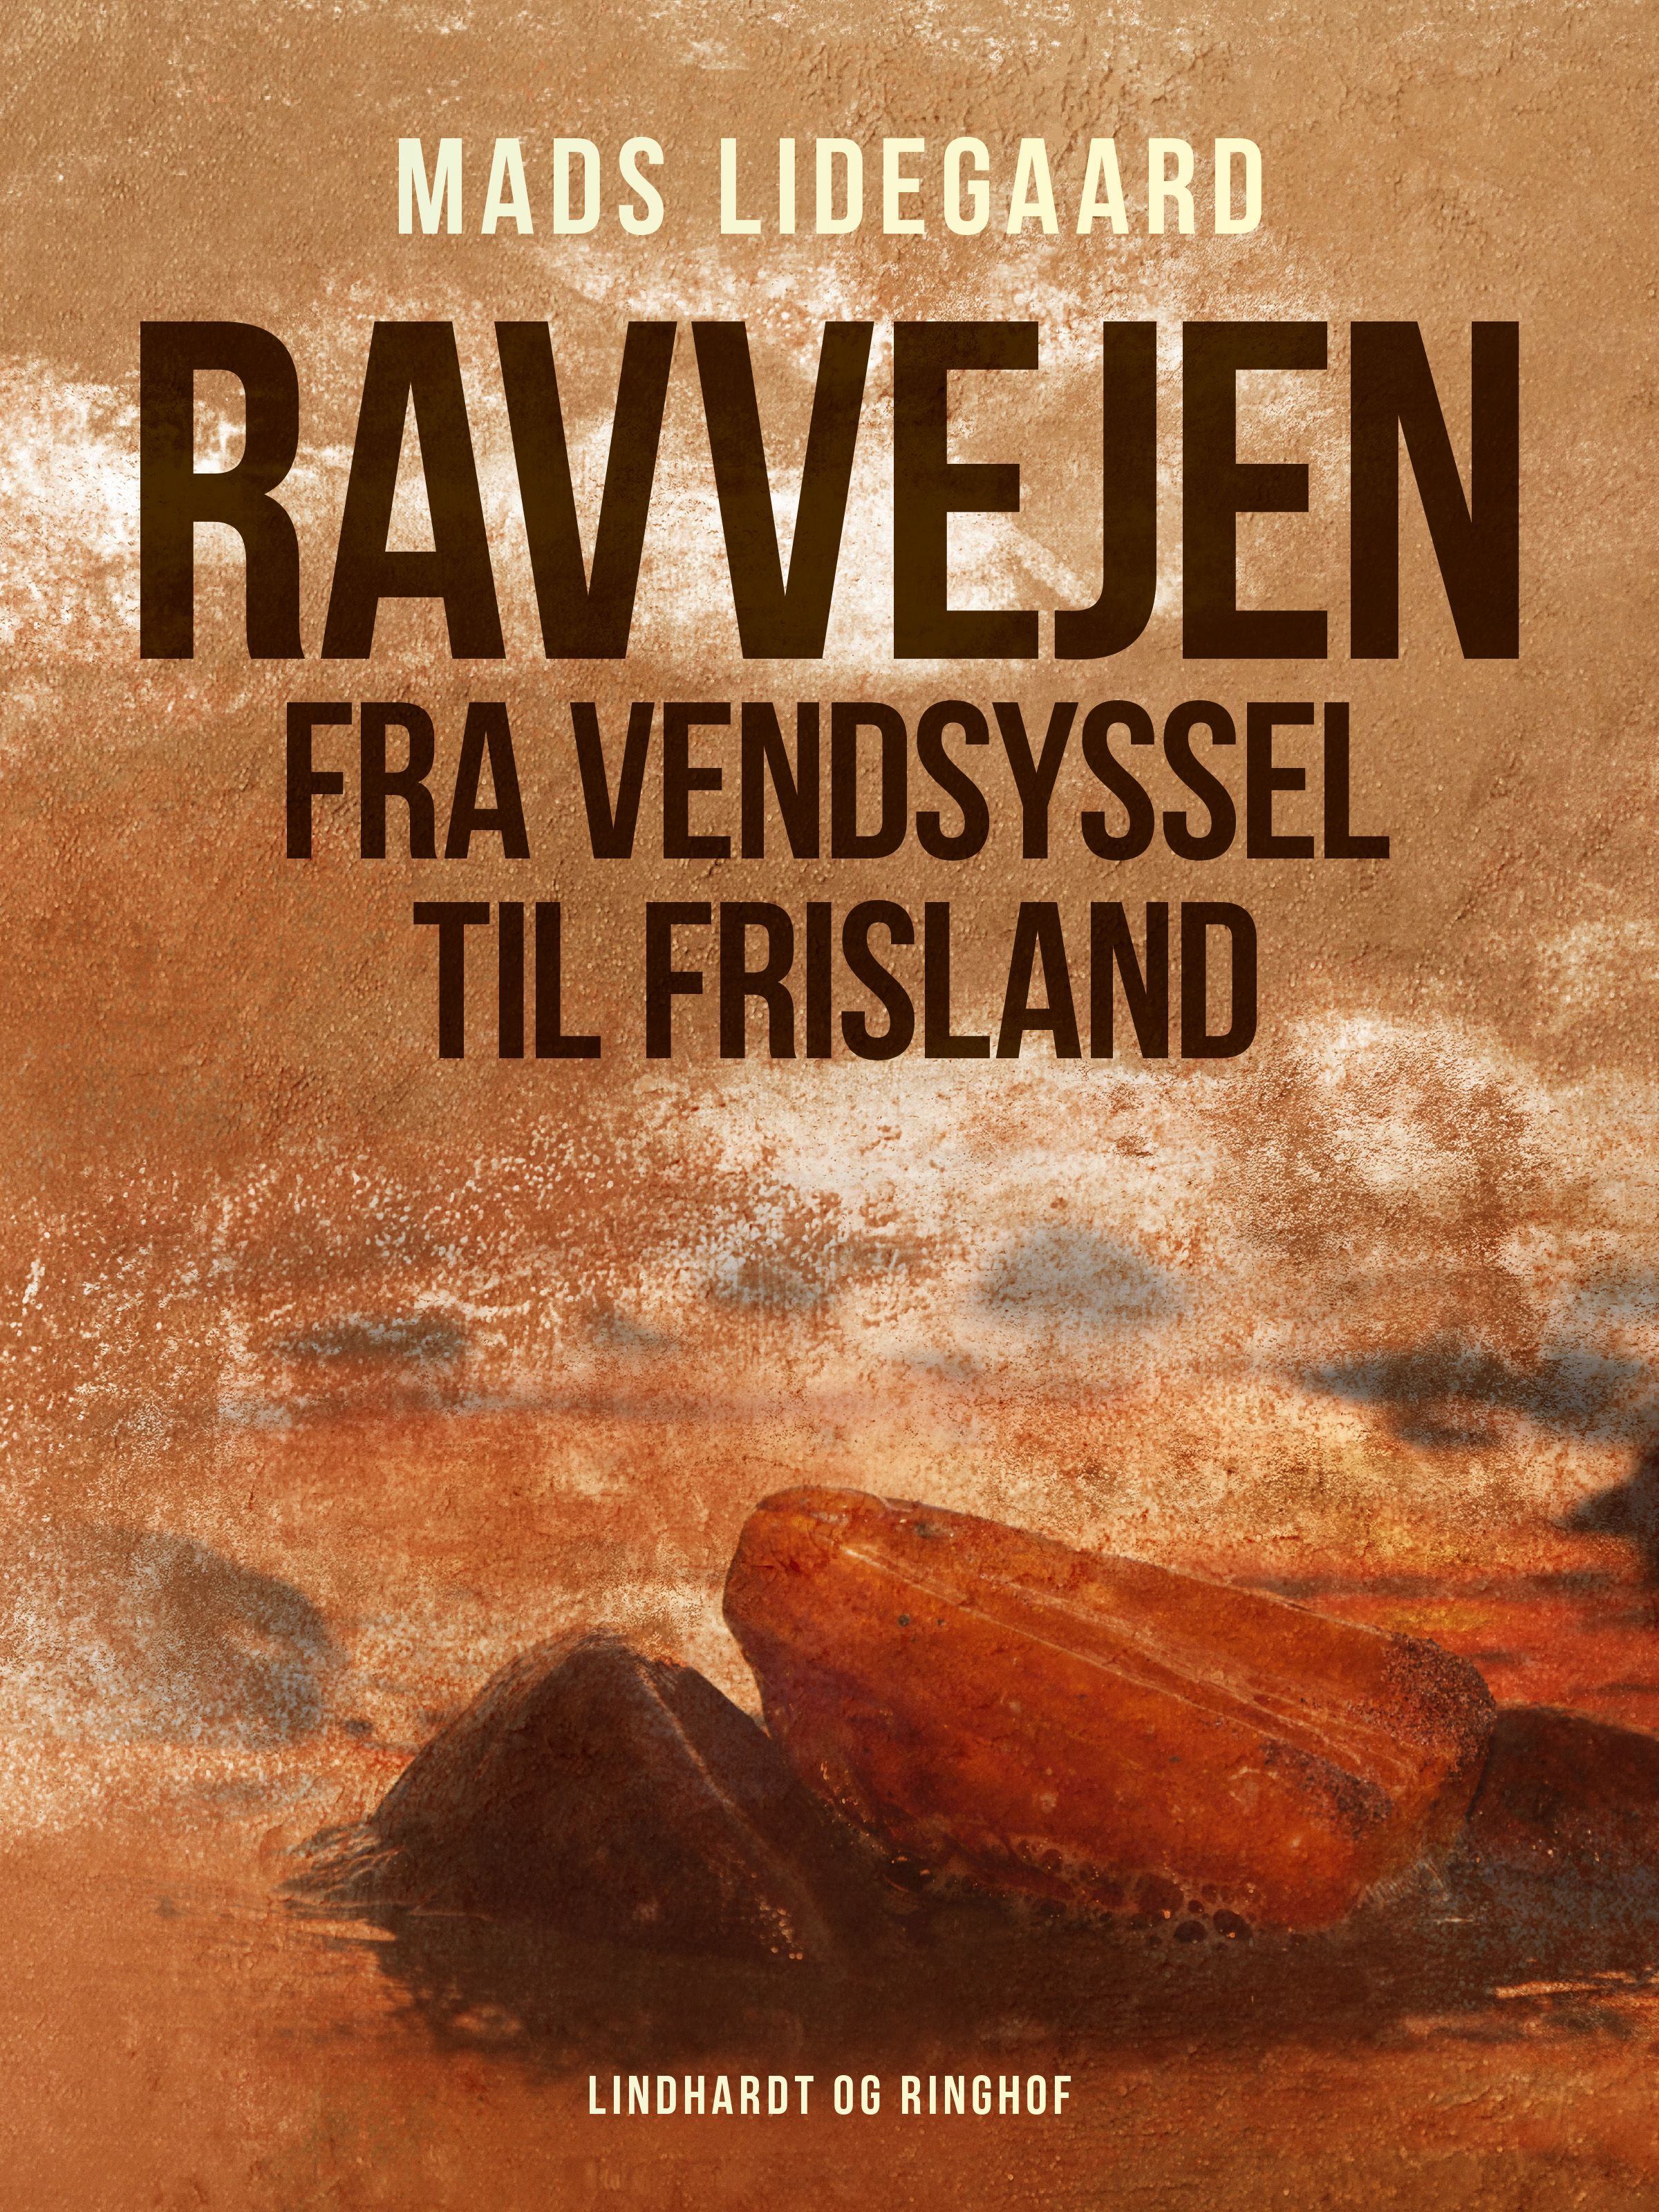 Ravvejen fra Vendsyssel til Frisland, e-bog af Mads Lidegaard